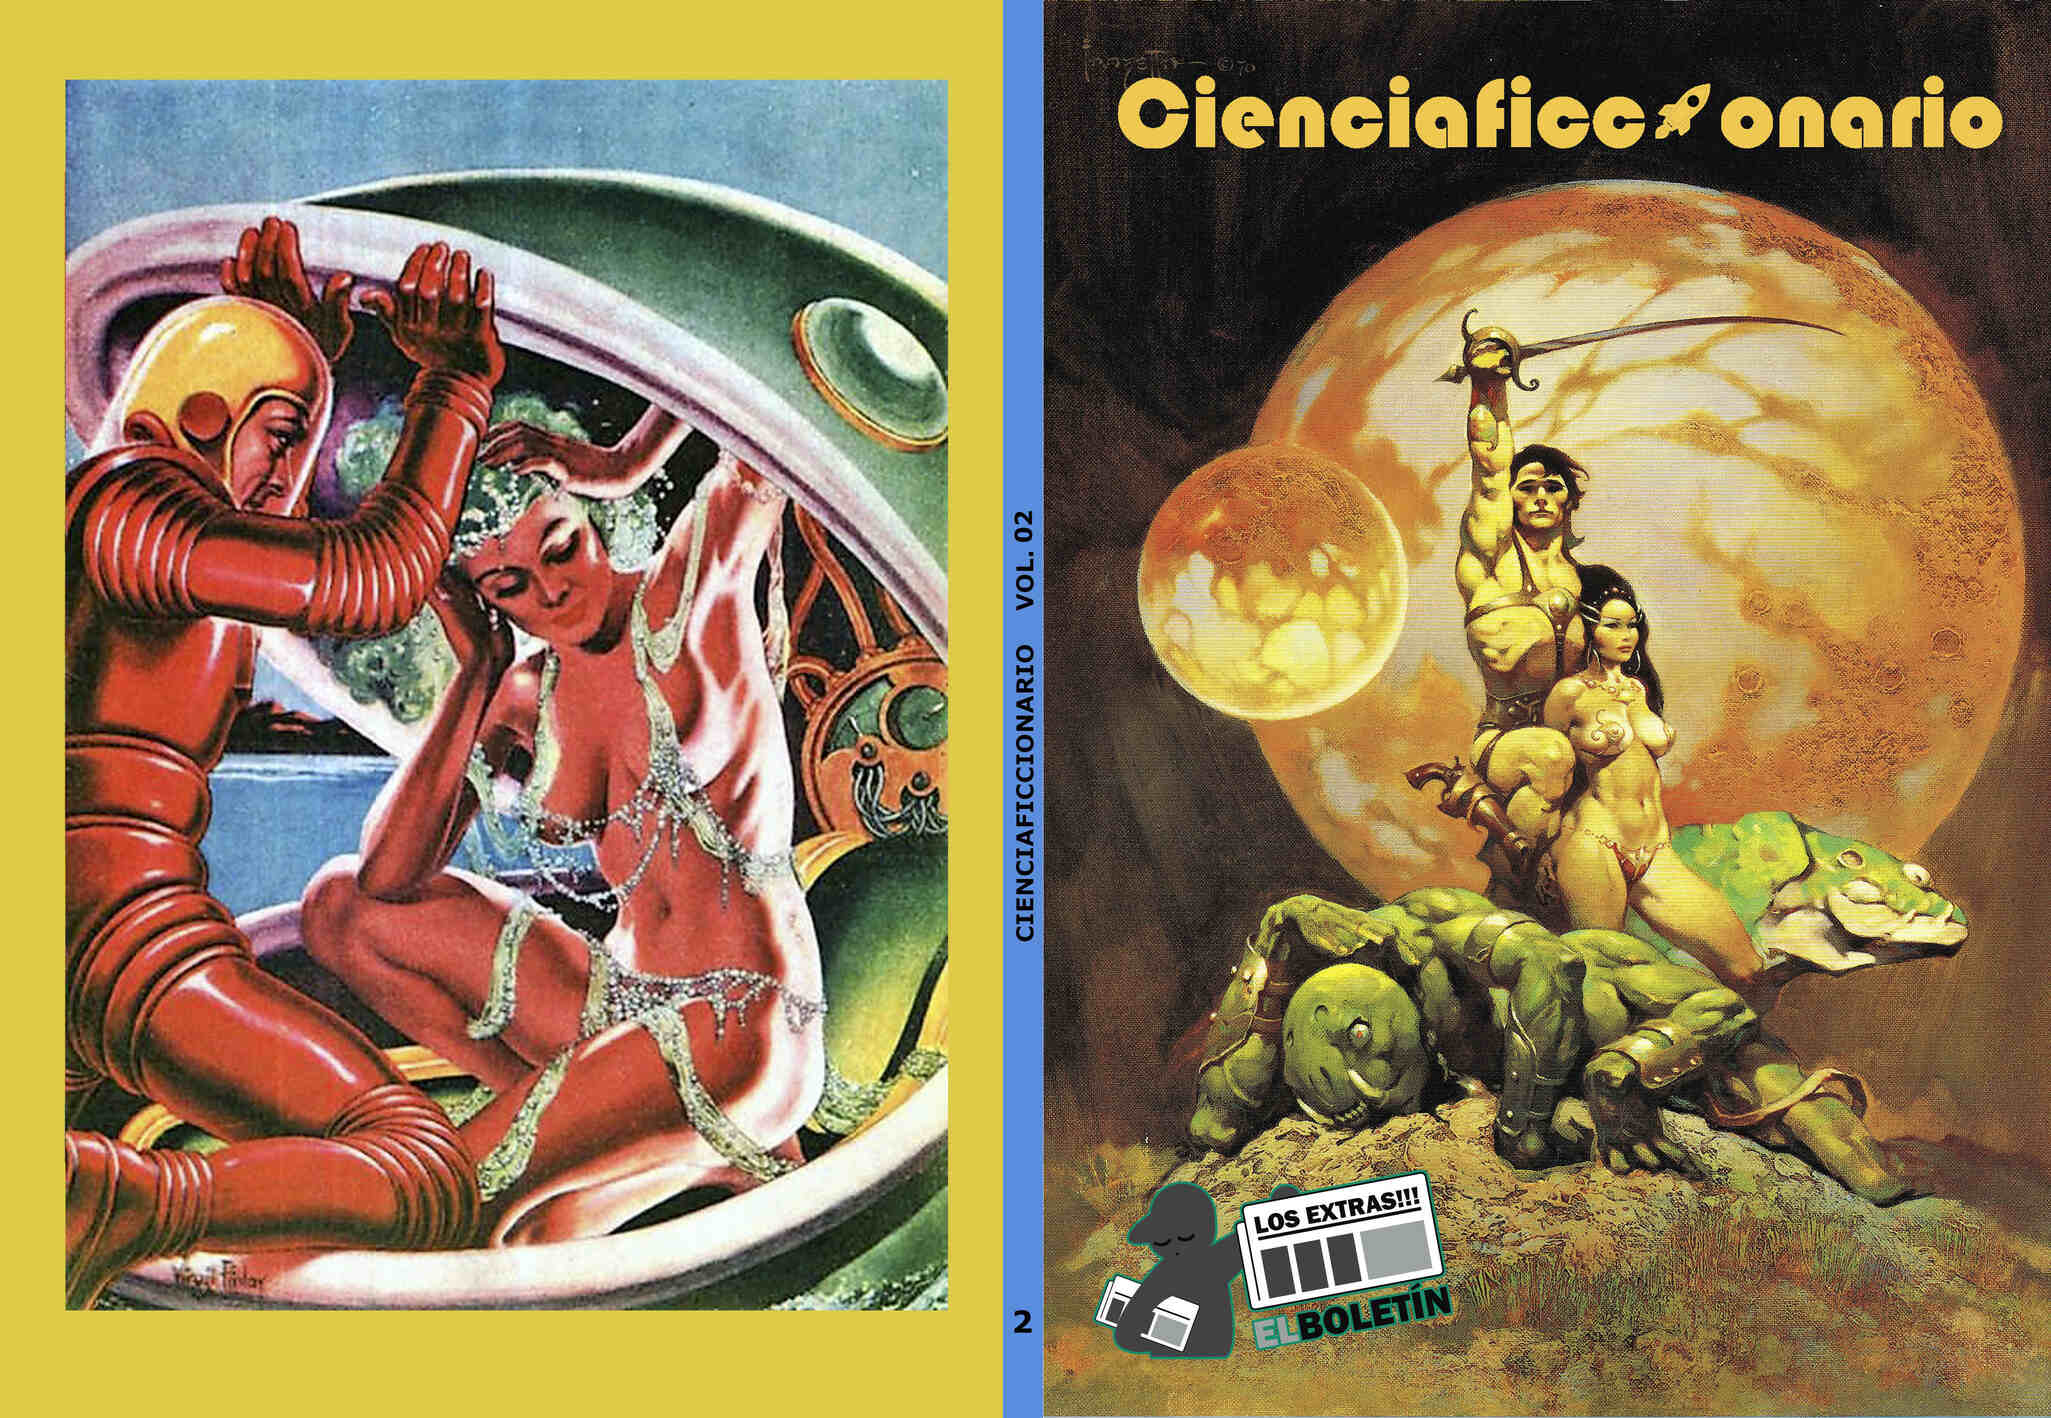 Ciencia ficcionario volumen 02: Edgar Rice Burroughs, Adam Strange, Aguila Negra, etc